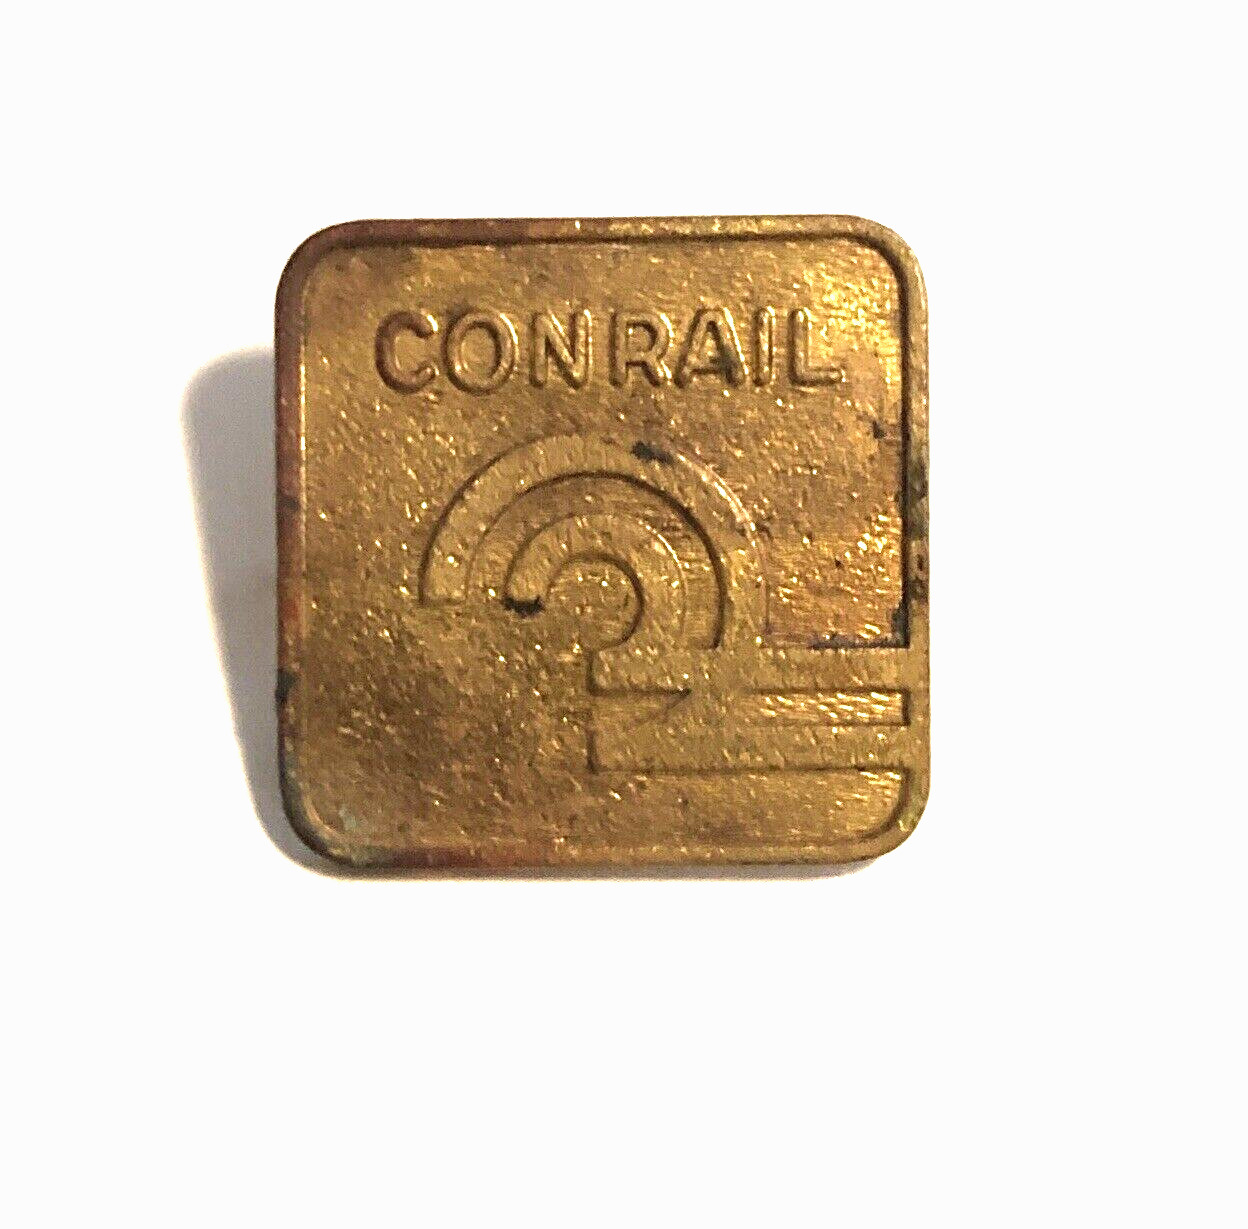 Conrail Conductor Engineer Brass Uniform Lapel Pin - Railroad Memorabilia